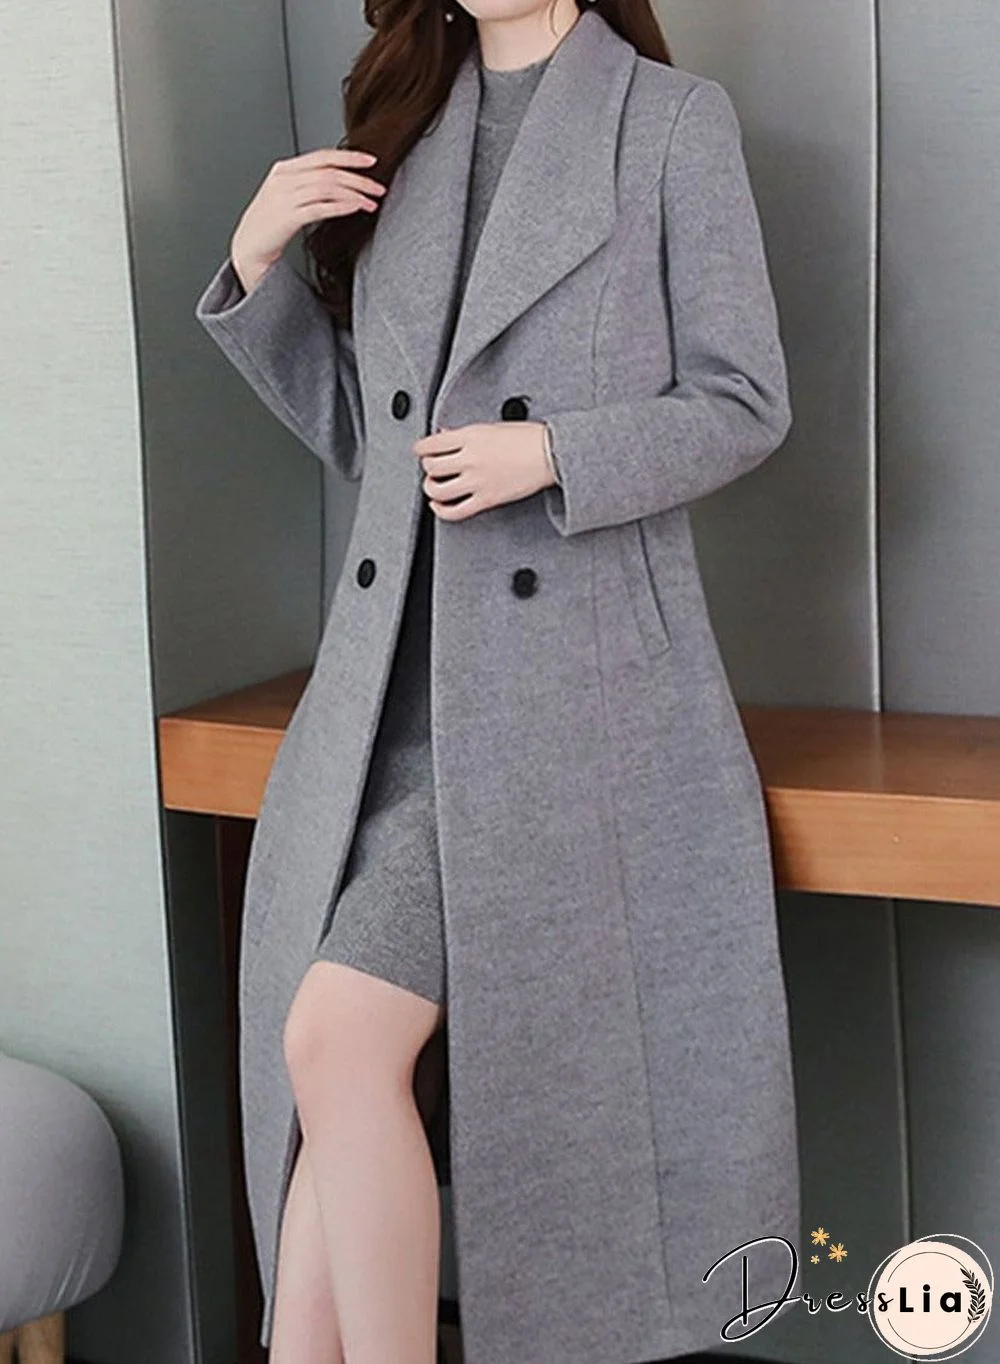 Women'S Wool Coat Lapel Super Long Coat